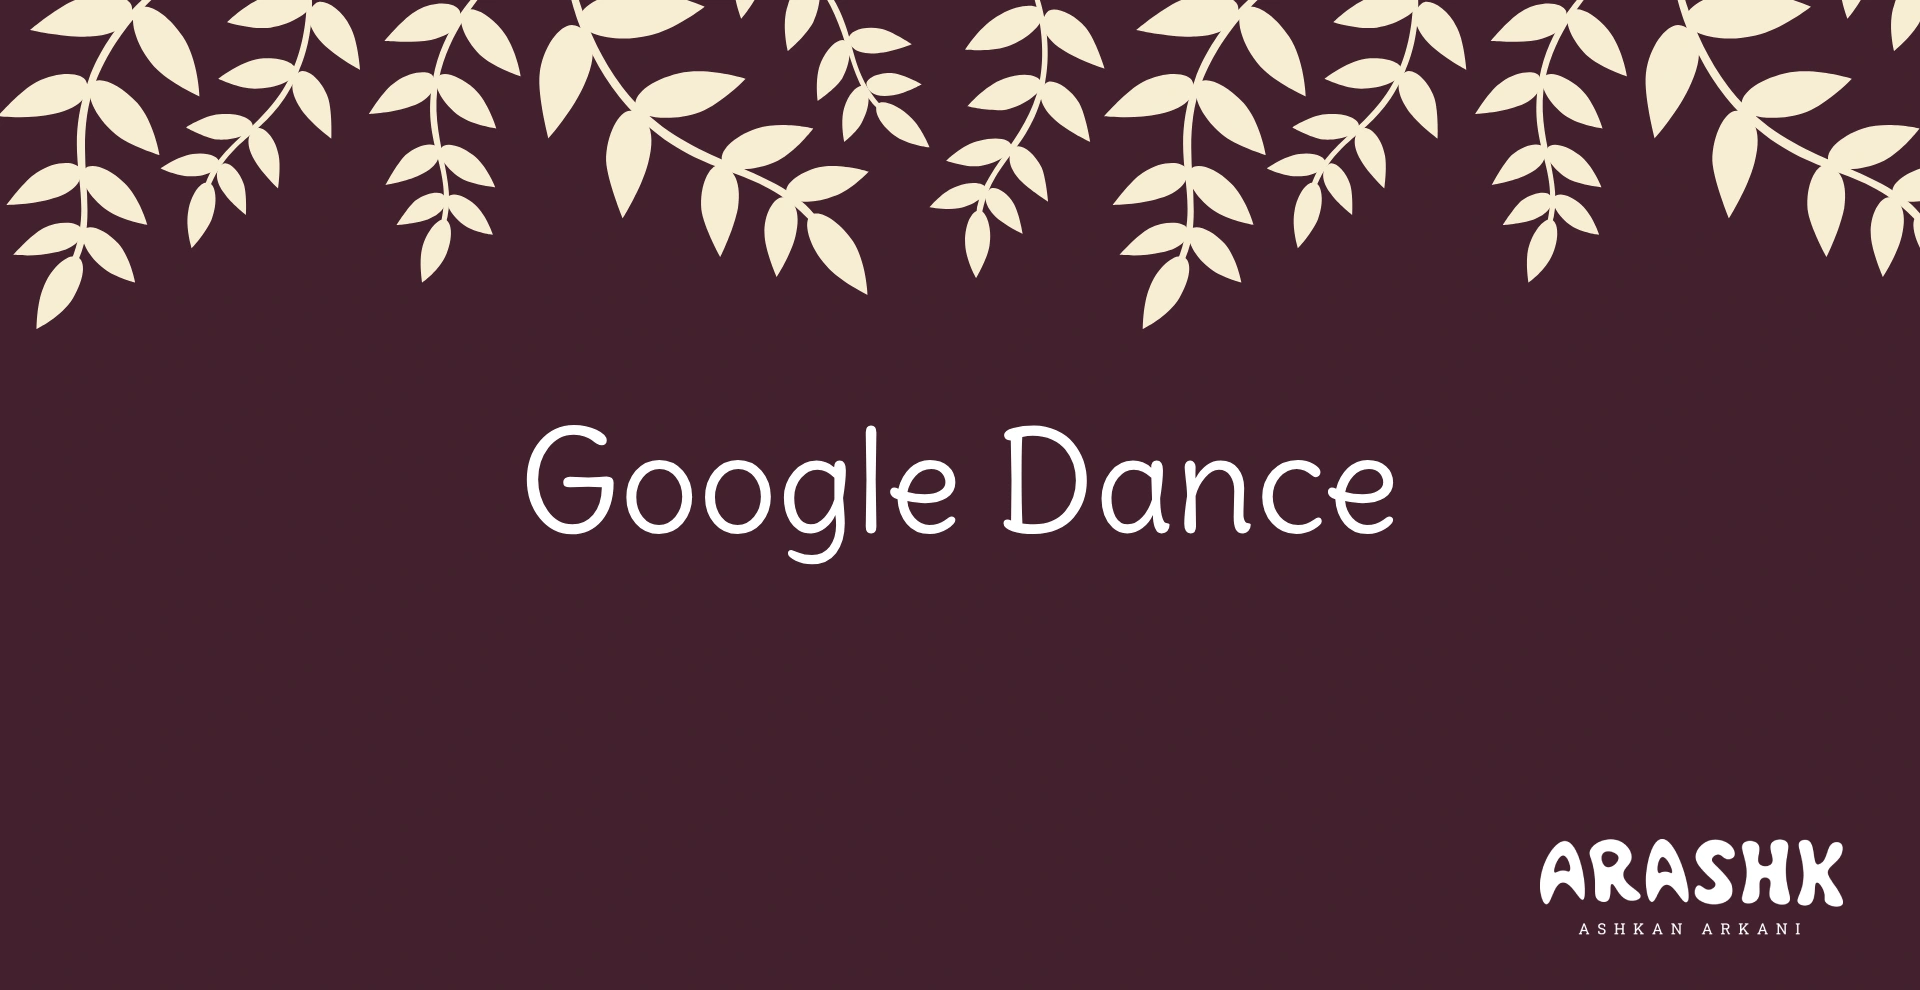 الگوریتم رقص گوگل یا گوگل دنس